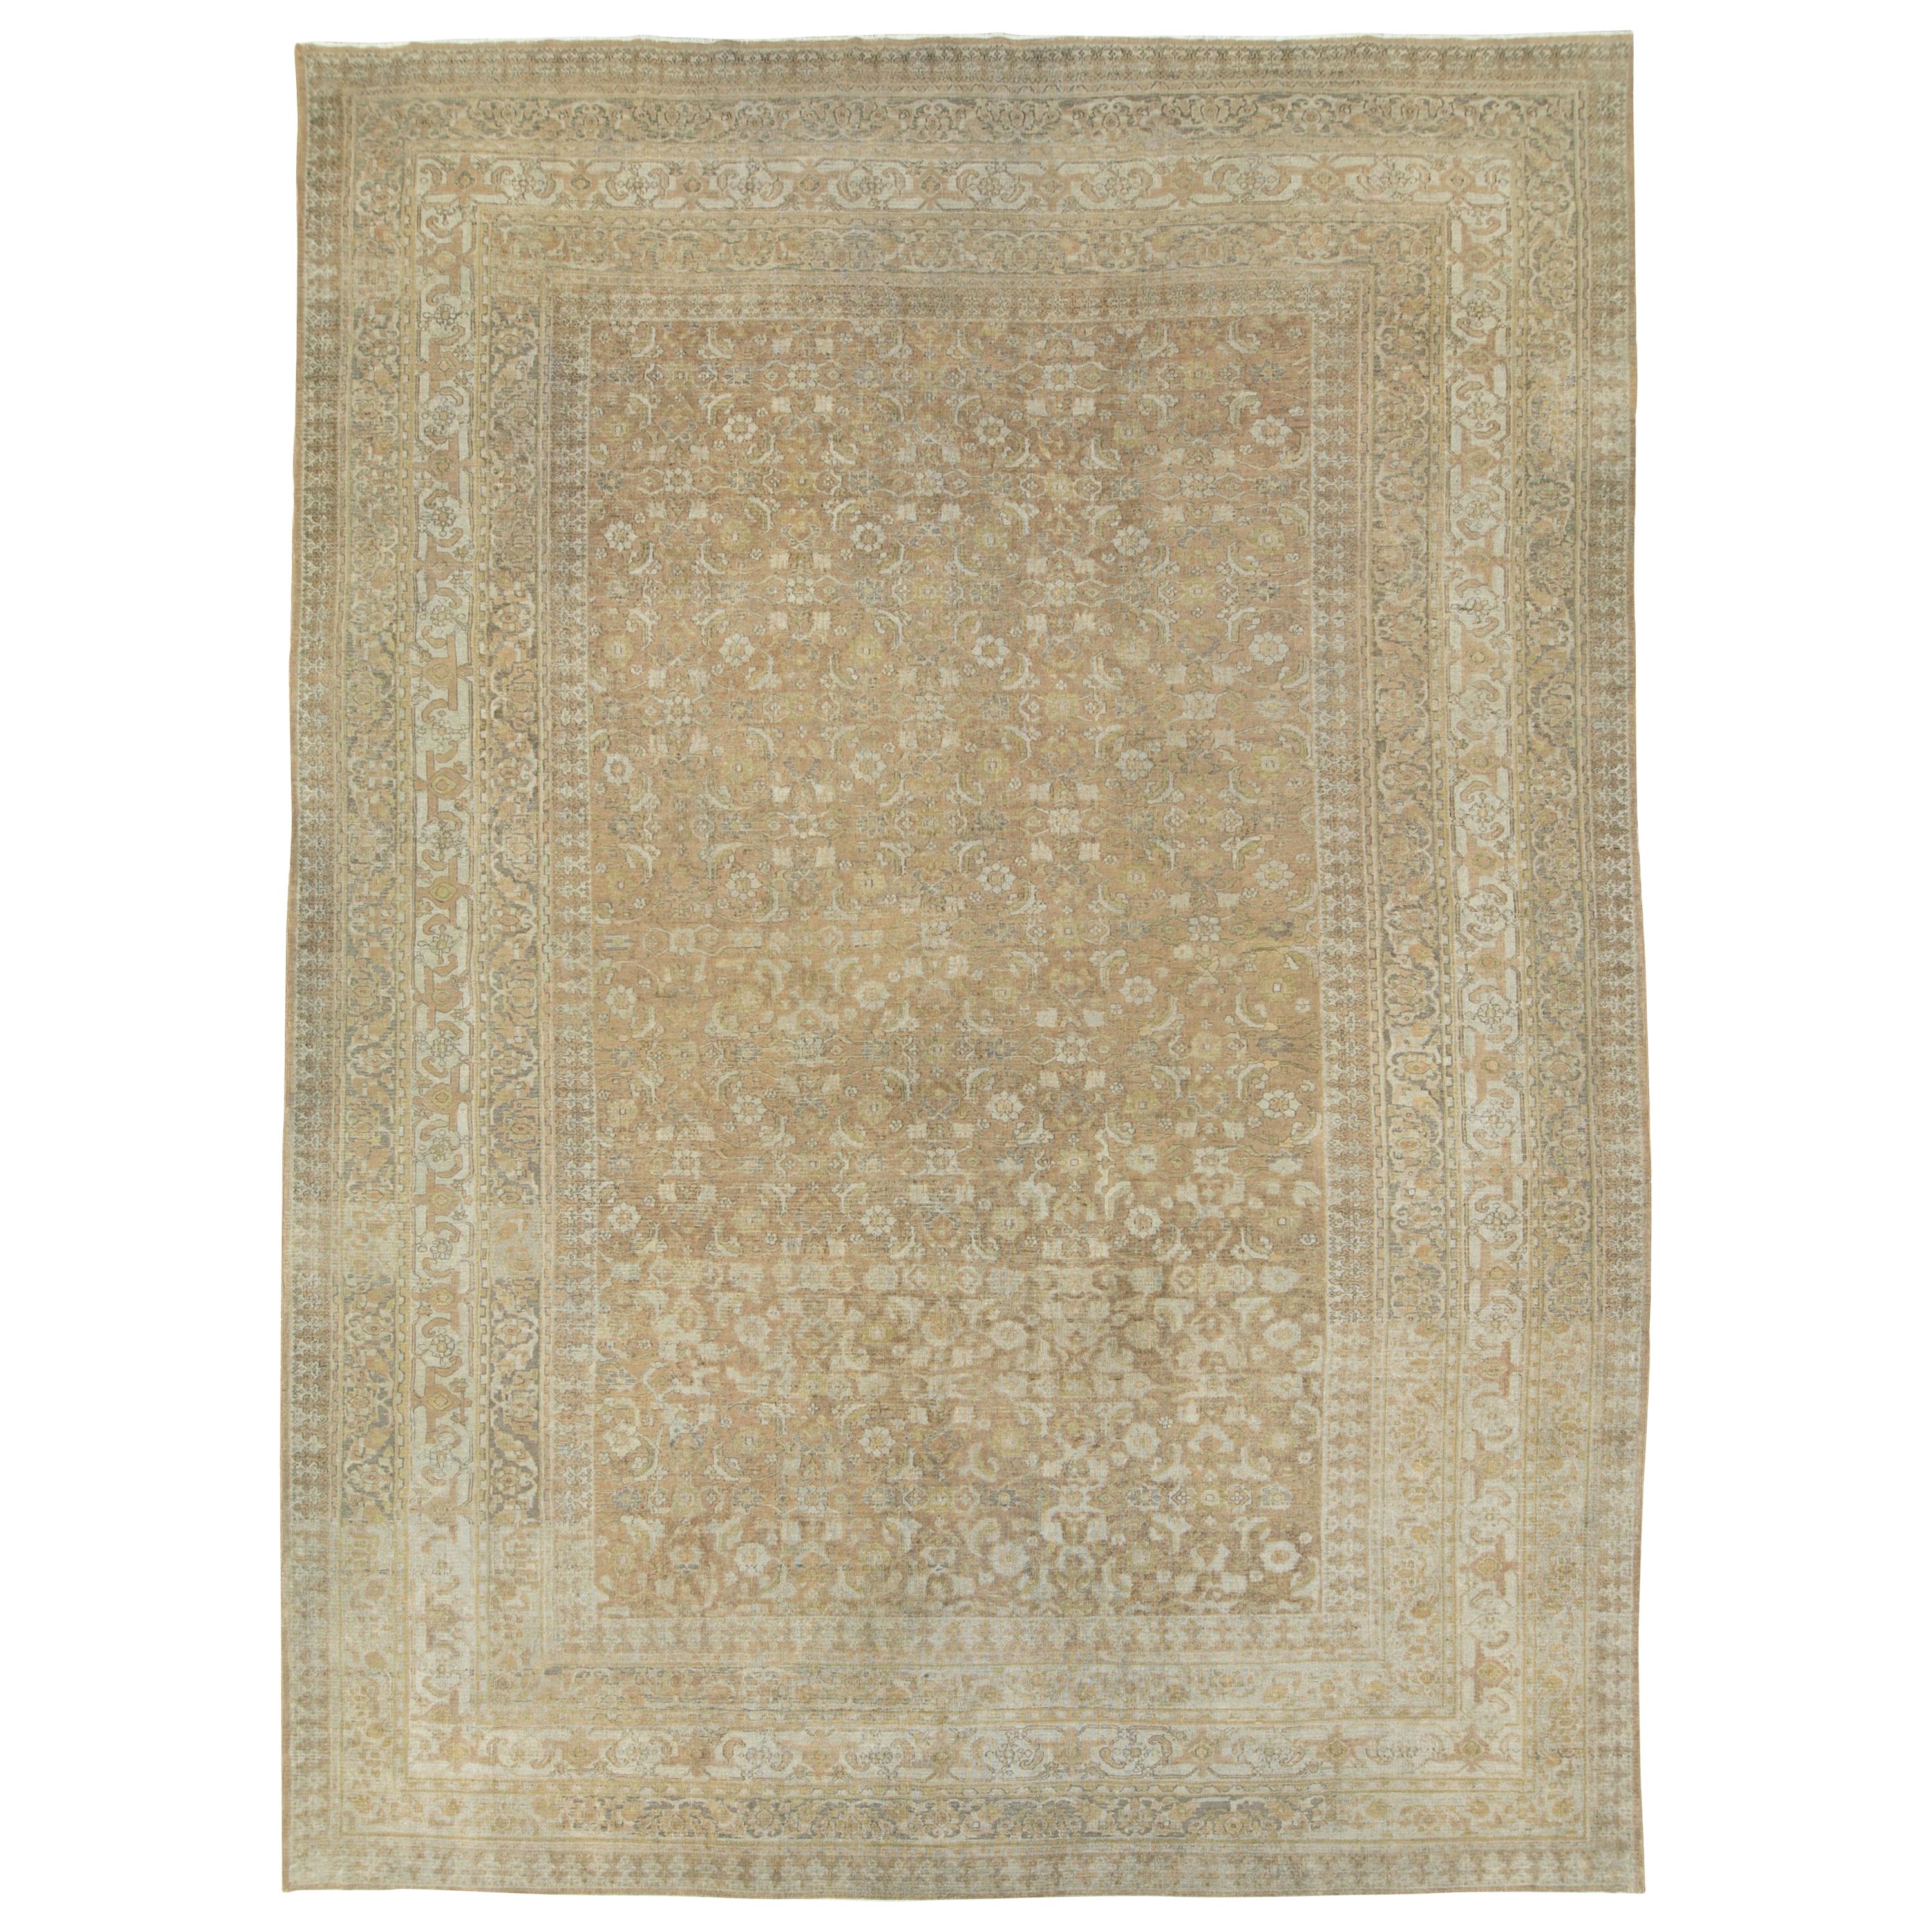 Antique Persian Khorassan Carpet For Sale